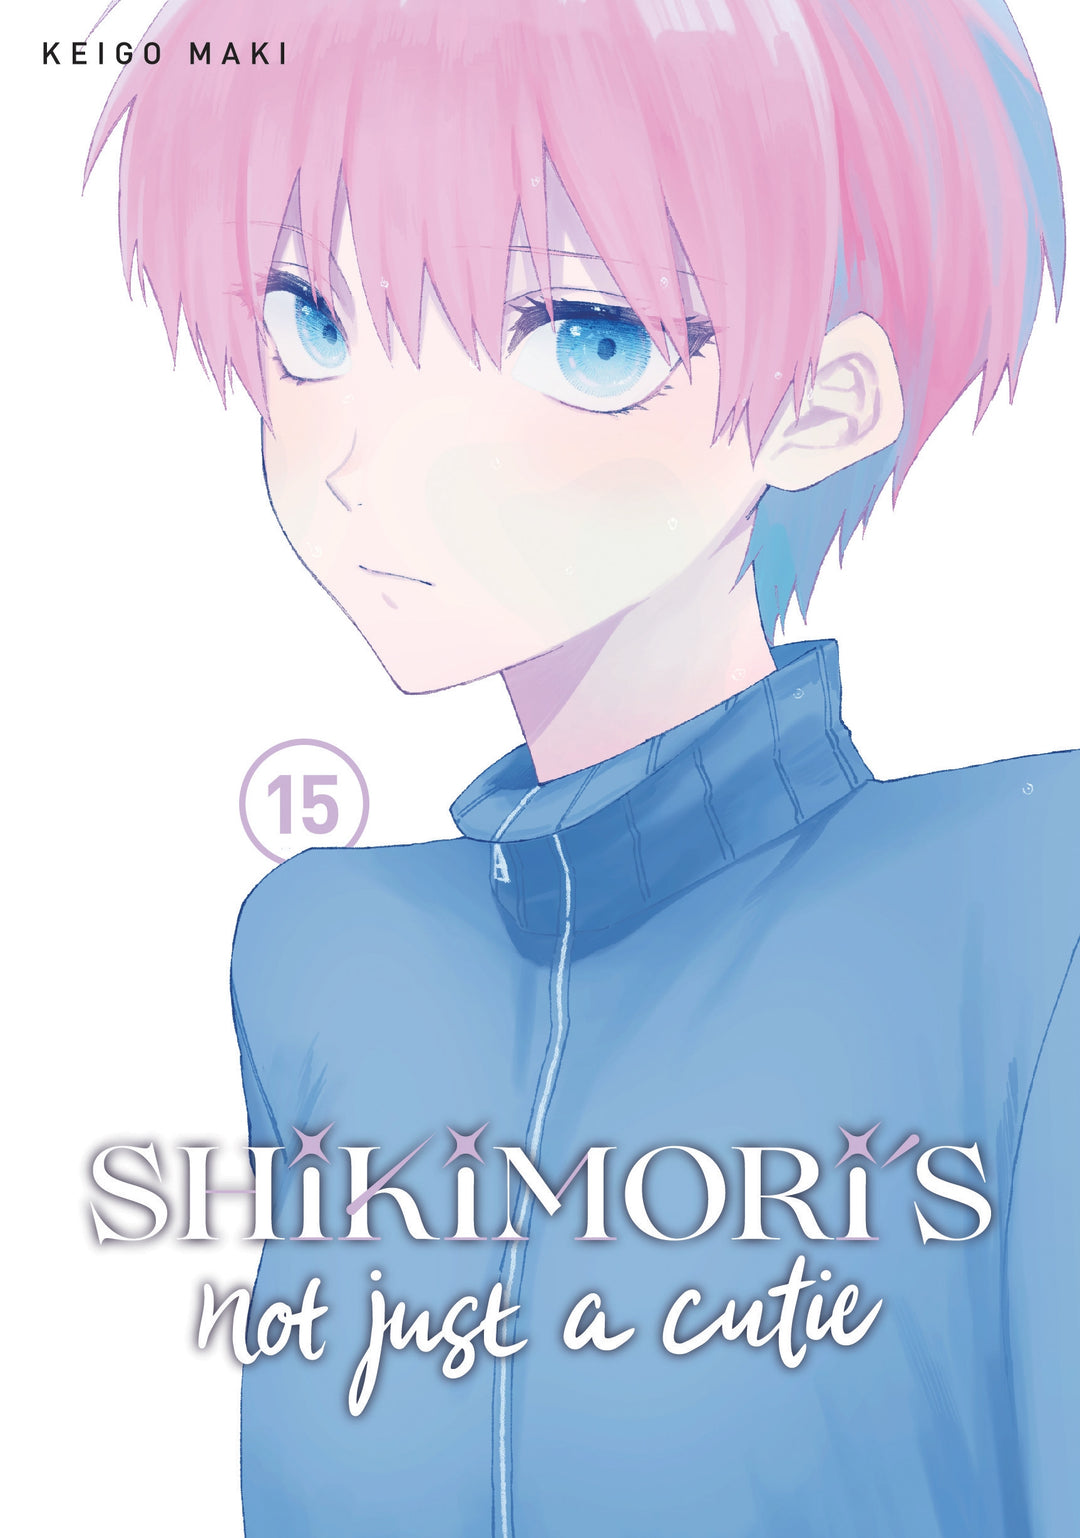 Shikimori's Not Just A Cutie, Vol. 15